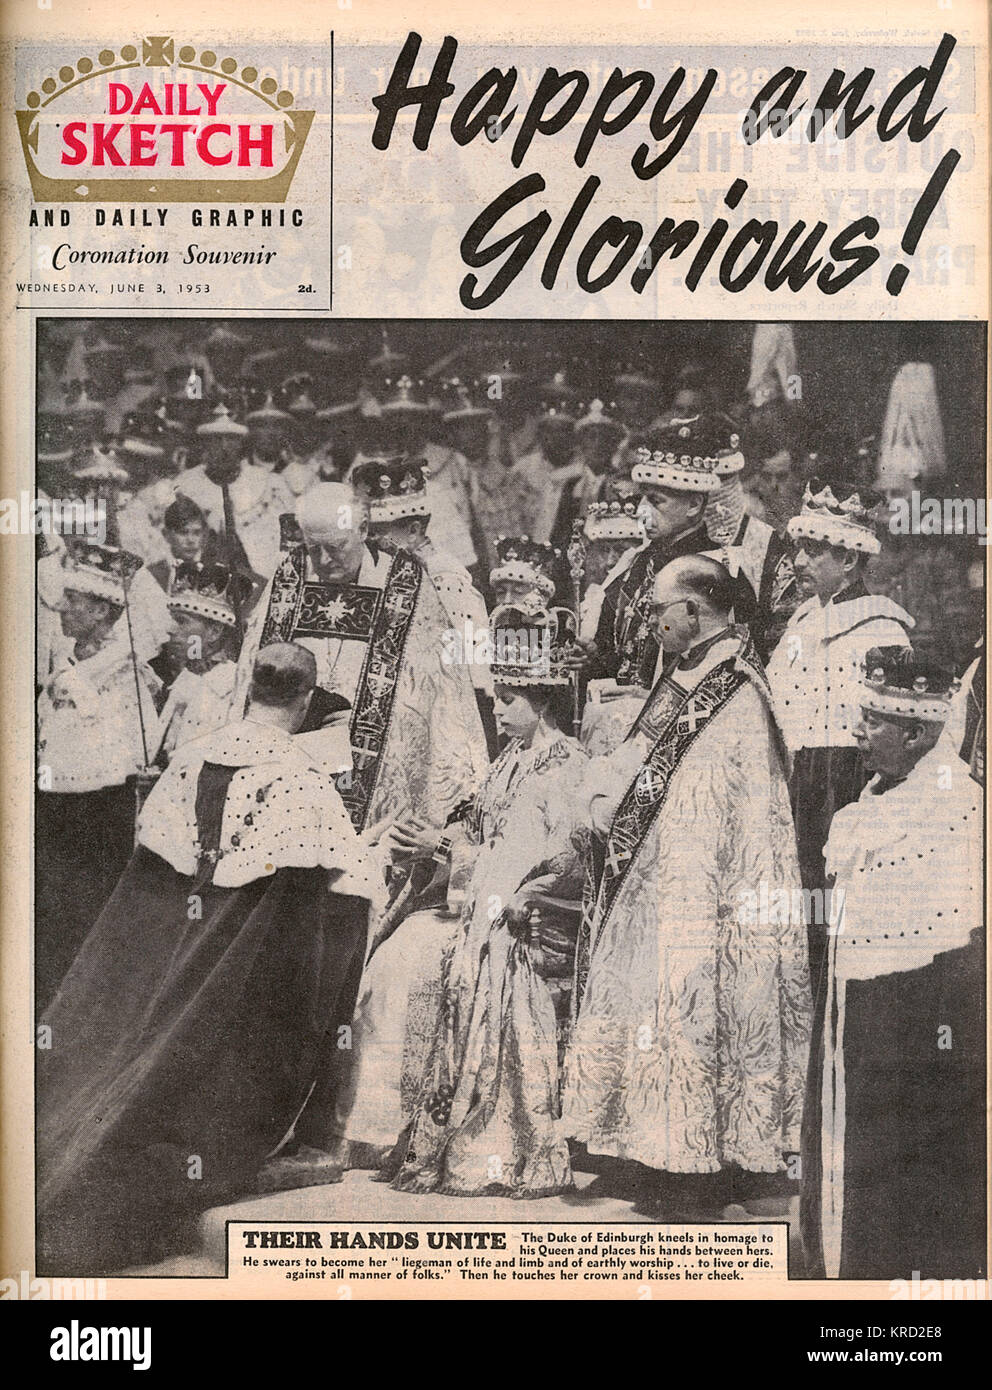 Vordere Abdeckung des täglichen Skizze Magazin vom 3. Juni 1953, am Tag nach der Krönung von Königin Elizabeth II. mit einem Foto der Herzog von Edinburgh eine Hommage an seine Frau nach der Zeremonie und die Schlagzeilen, 'Happy&amp; Glorreiche'! Datum: 1953 Stockfoto